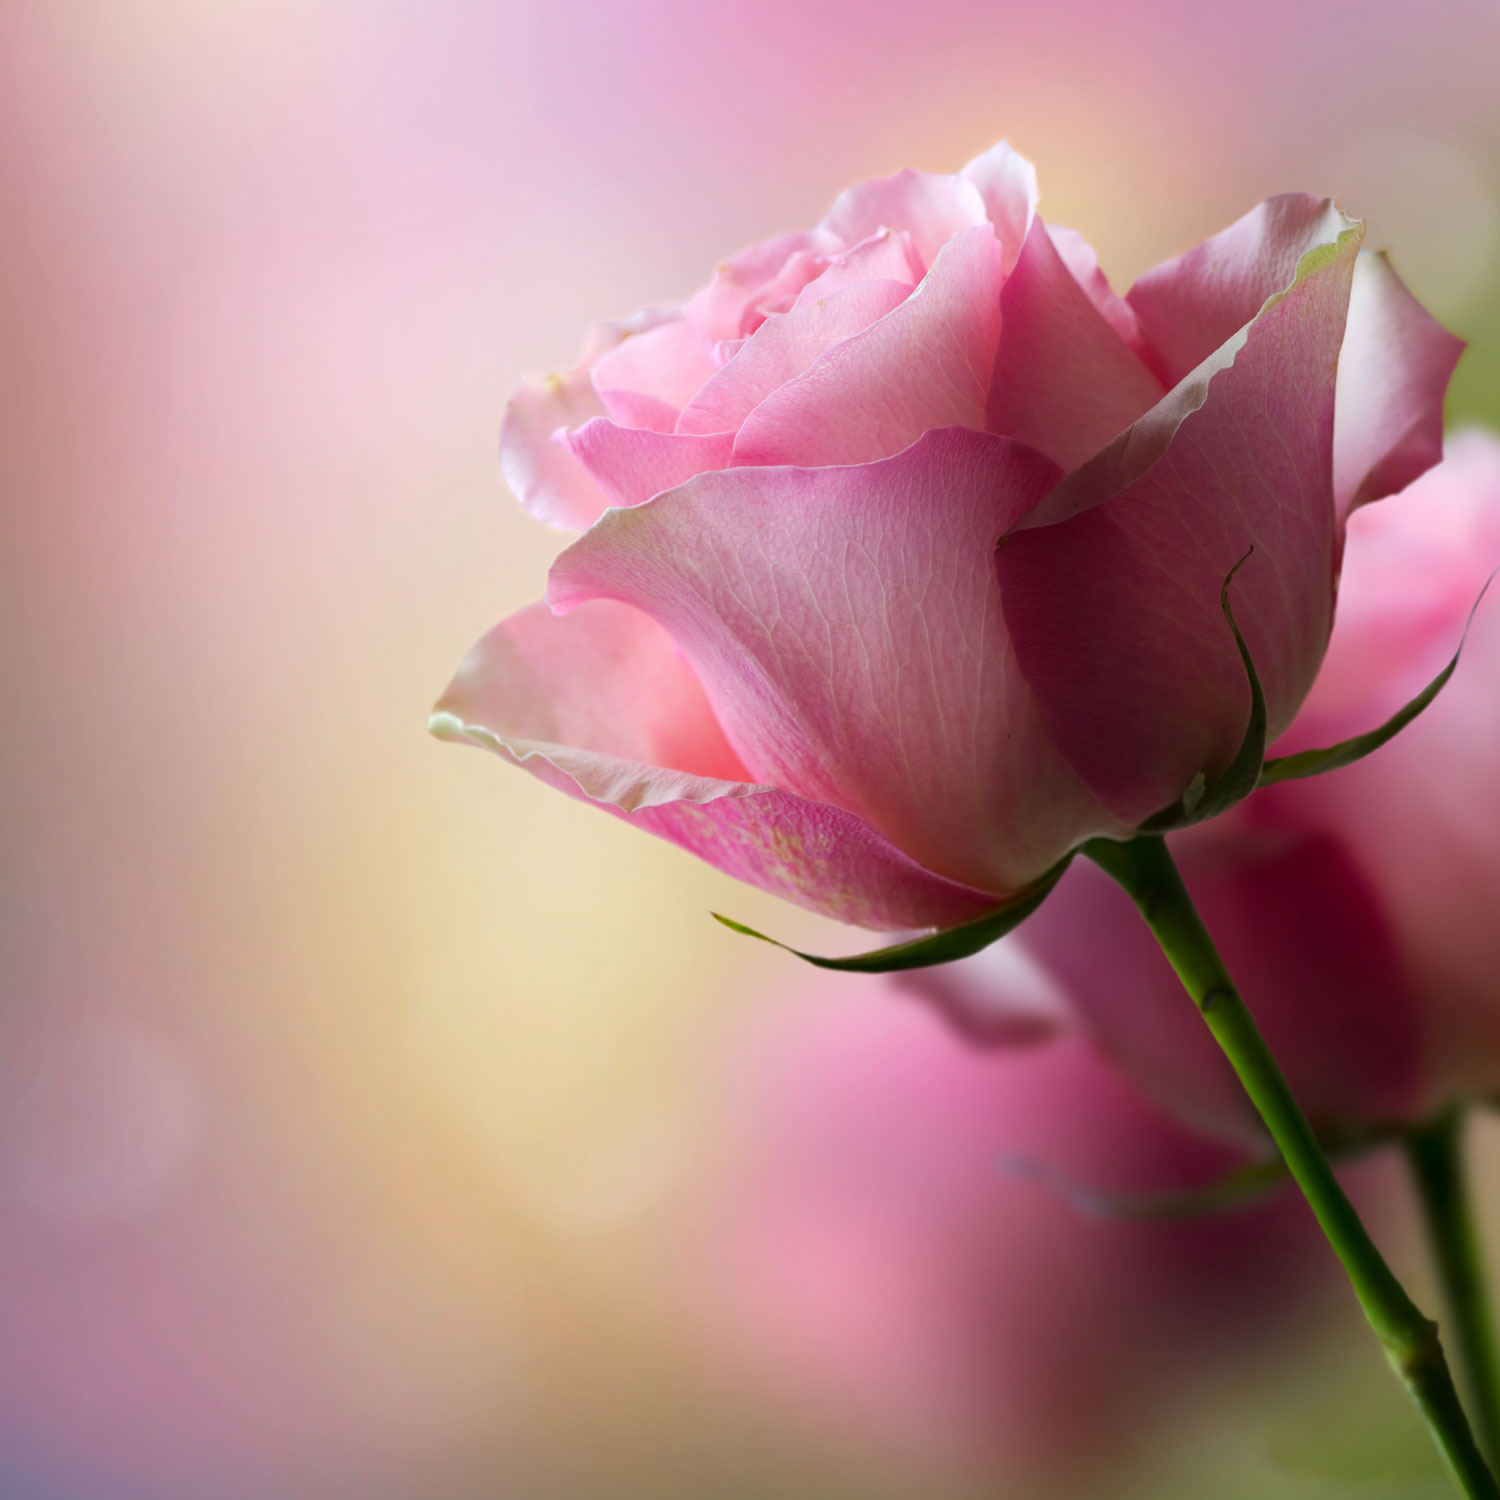 Single Pink Rose Wallpaper 1080p On High Resolution - High Resolution 1080p Flowers Wallpaper Hd